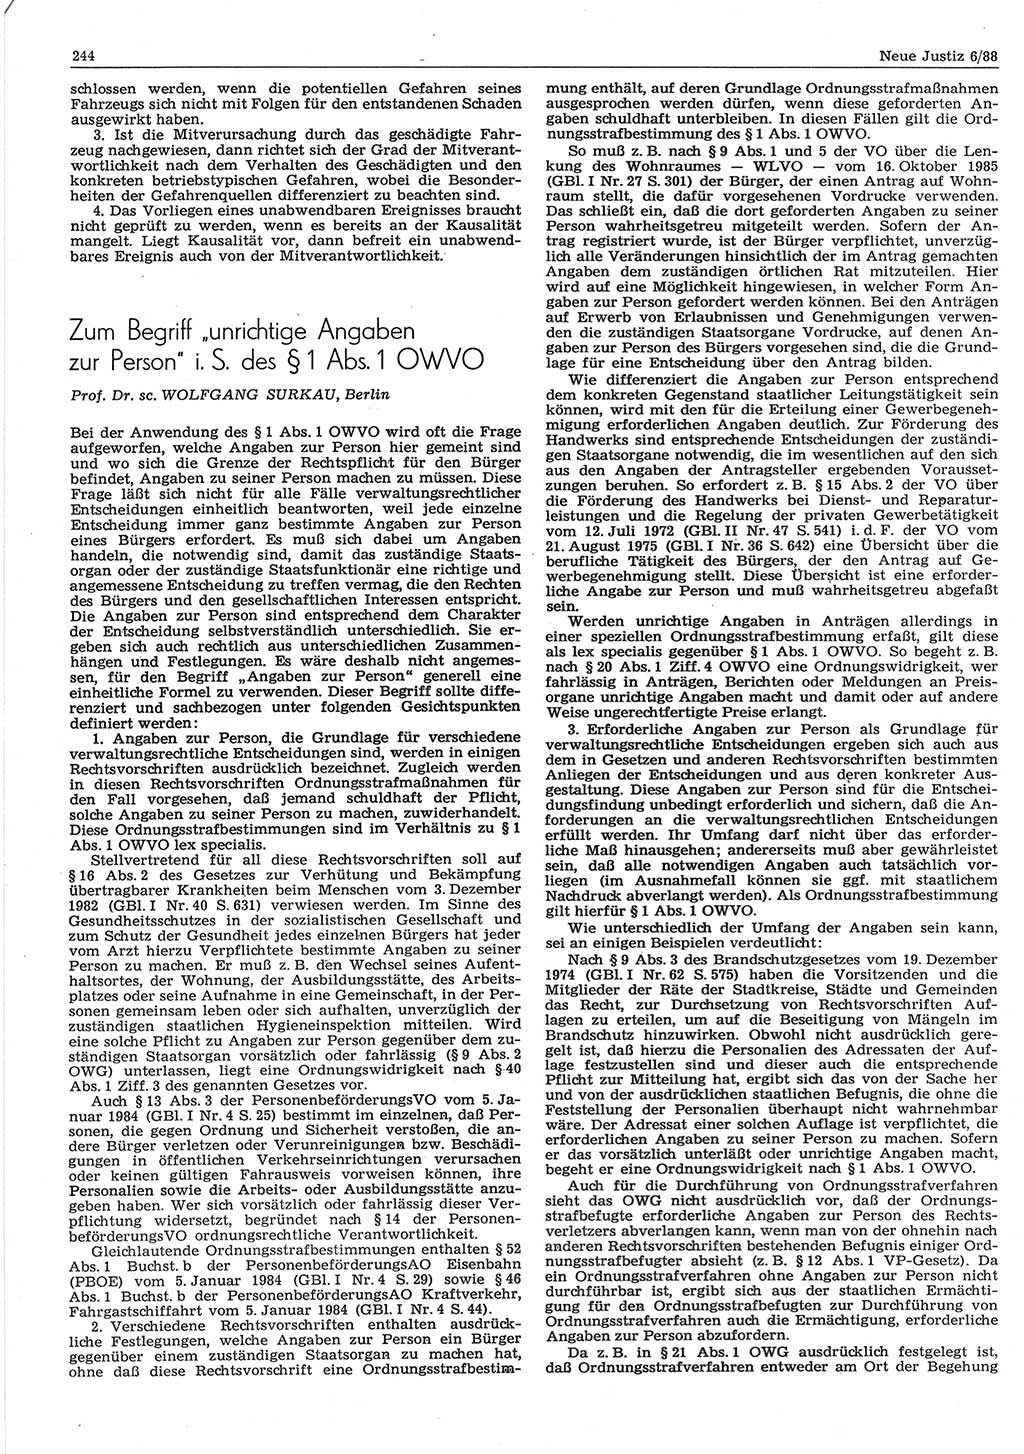 Neue Justiz (NJ), Zeitschrift für sozialistisches Recht und Gesetzlichkeit [Deutsche Demokratische Republik (DDR)], 42. Jahrgang 1988, Seite 244 (NJ DDR 1988, S. 244)